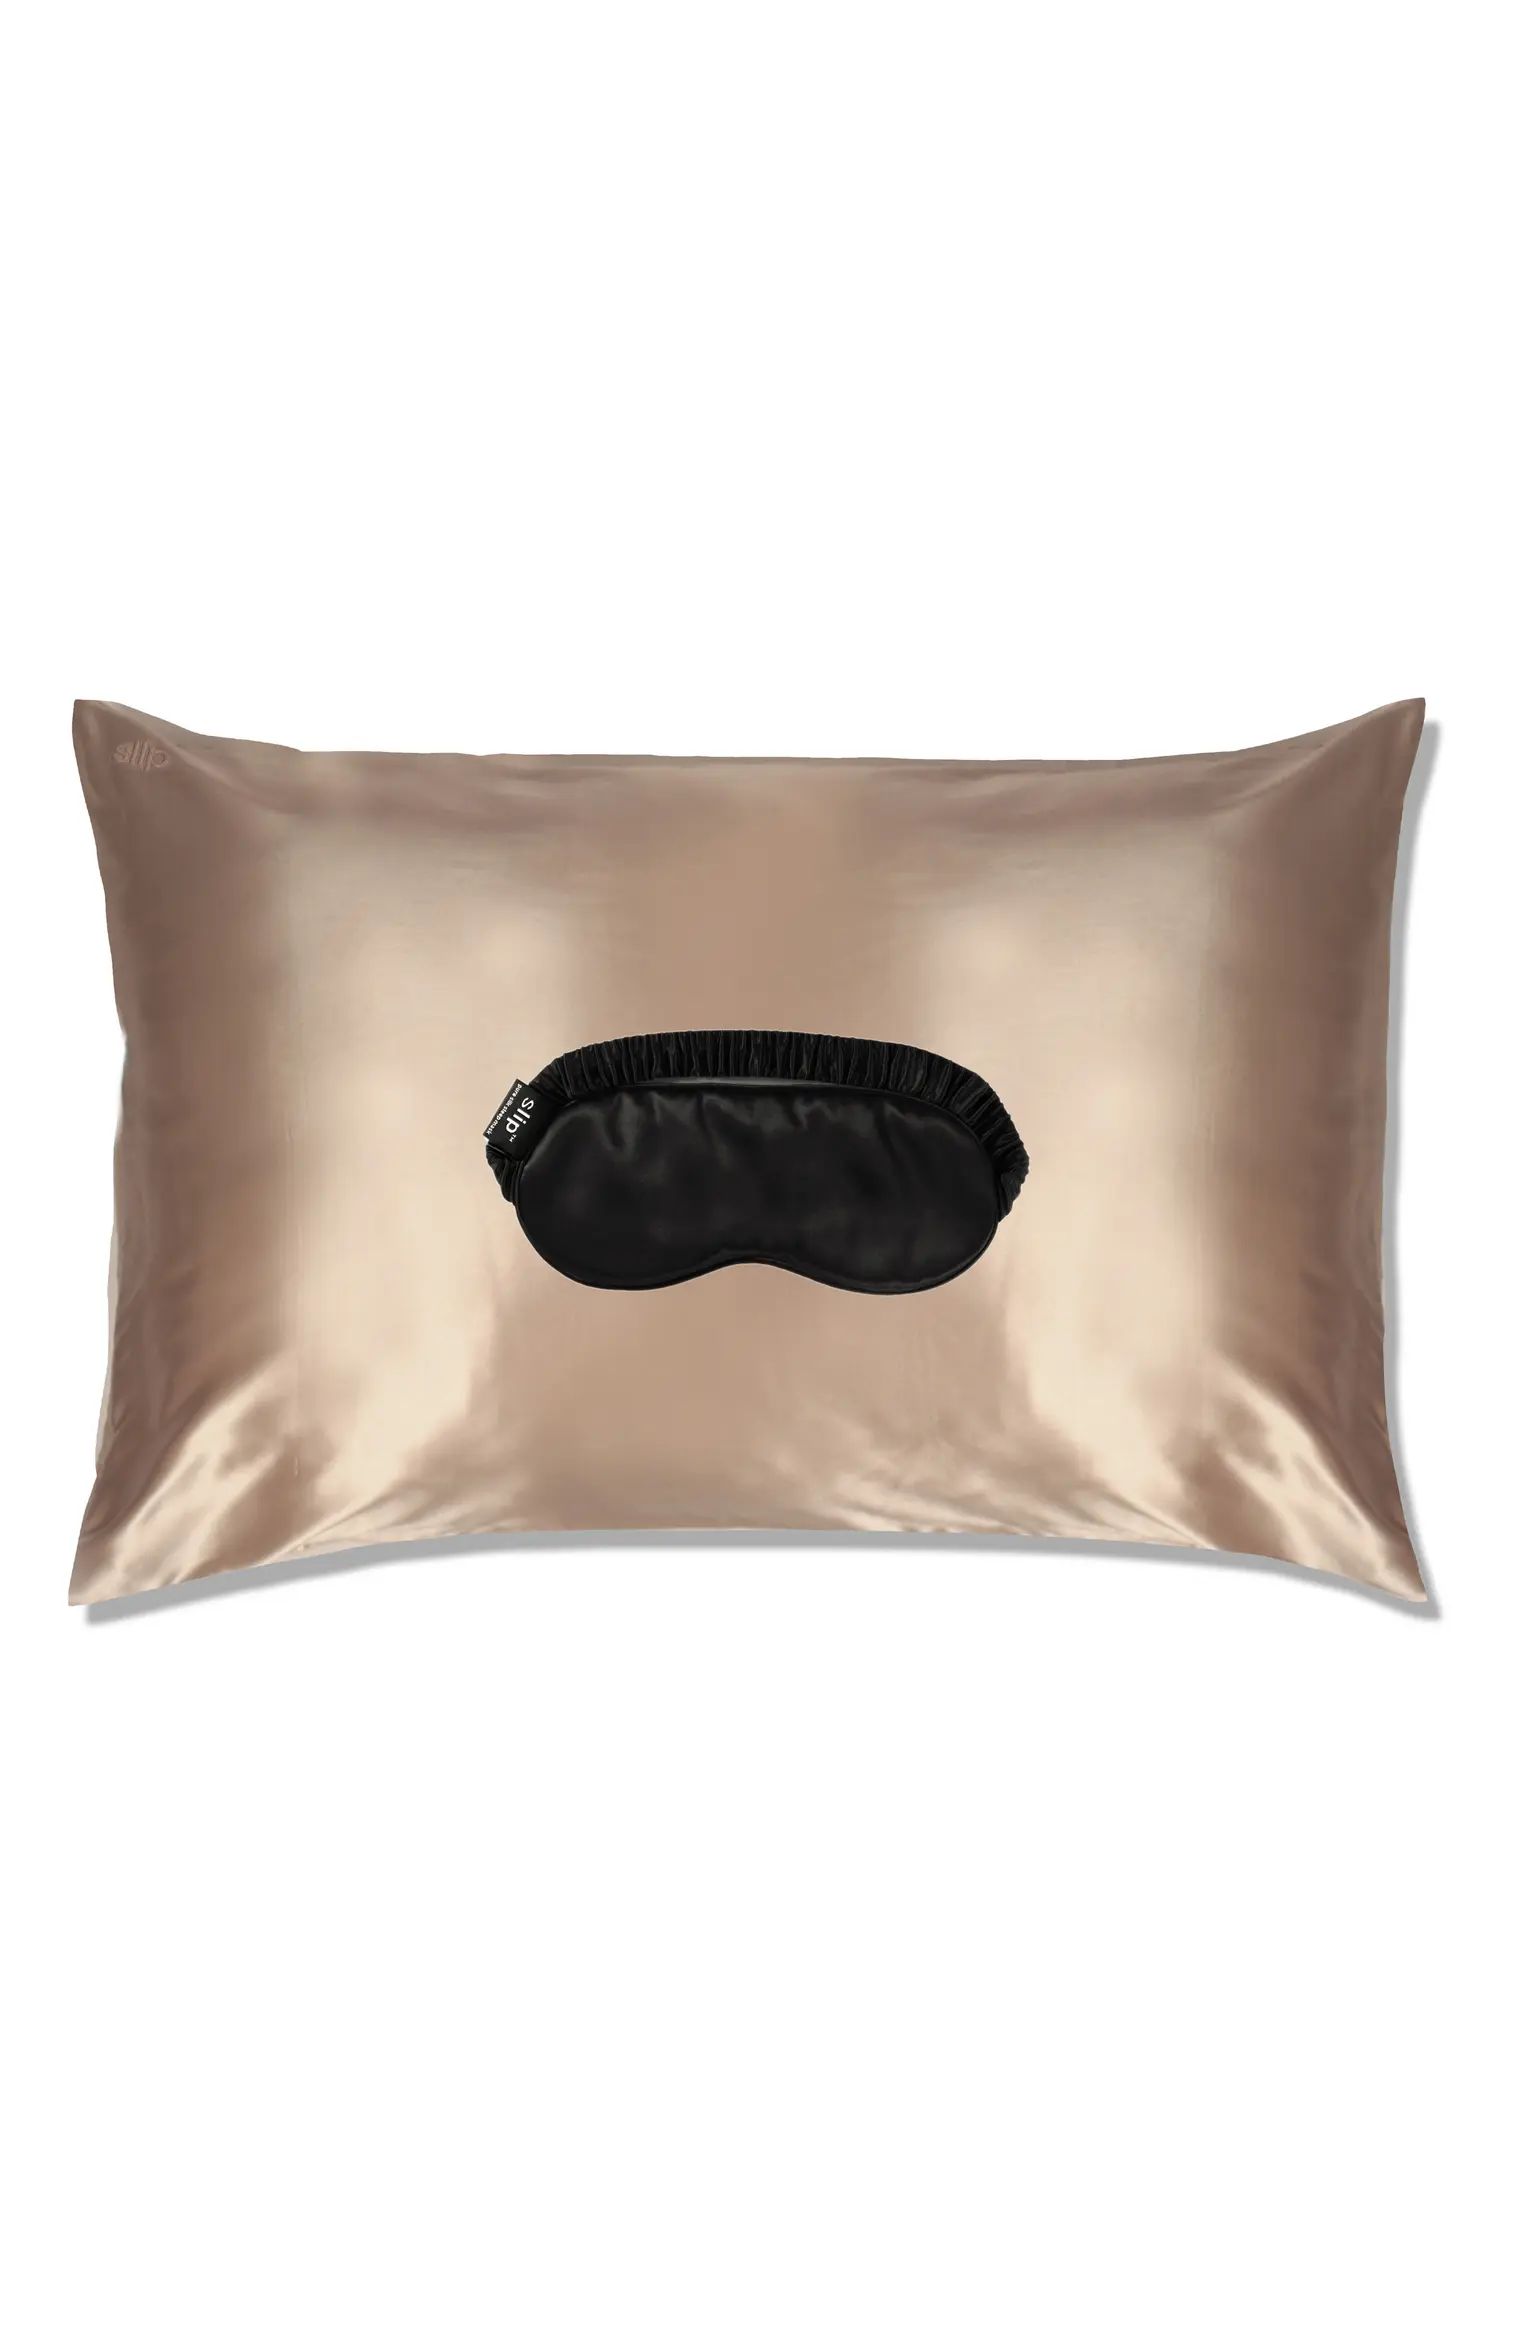 slip™ for beauty sleep Pillowcase & Eye Mask Set | Nordstrom